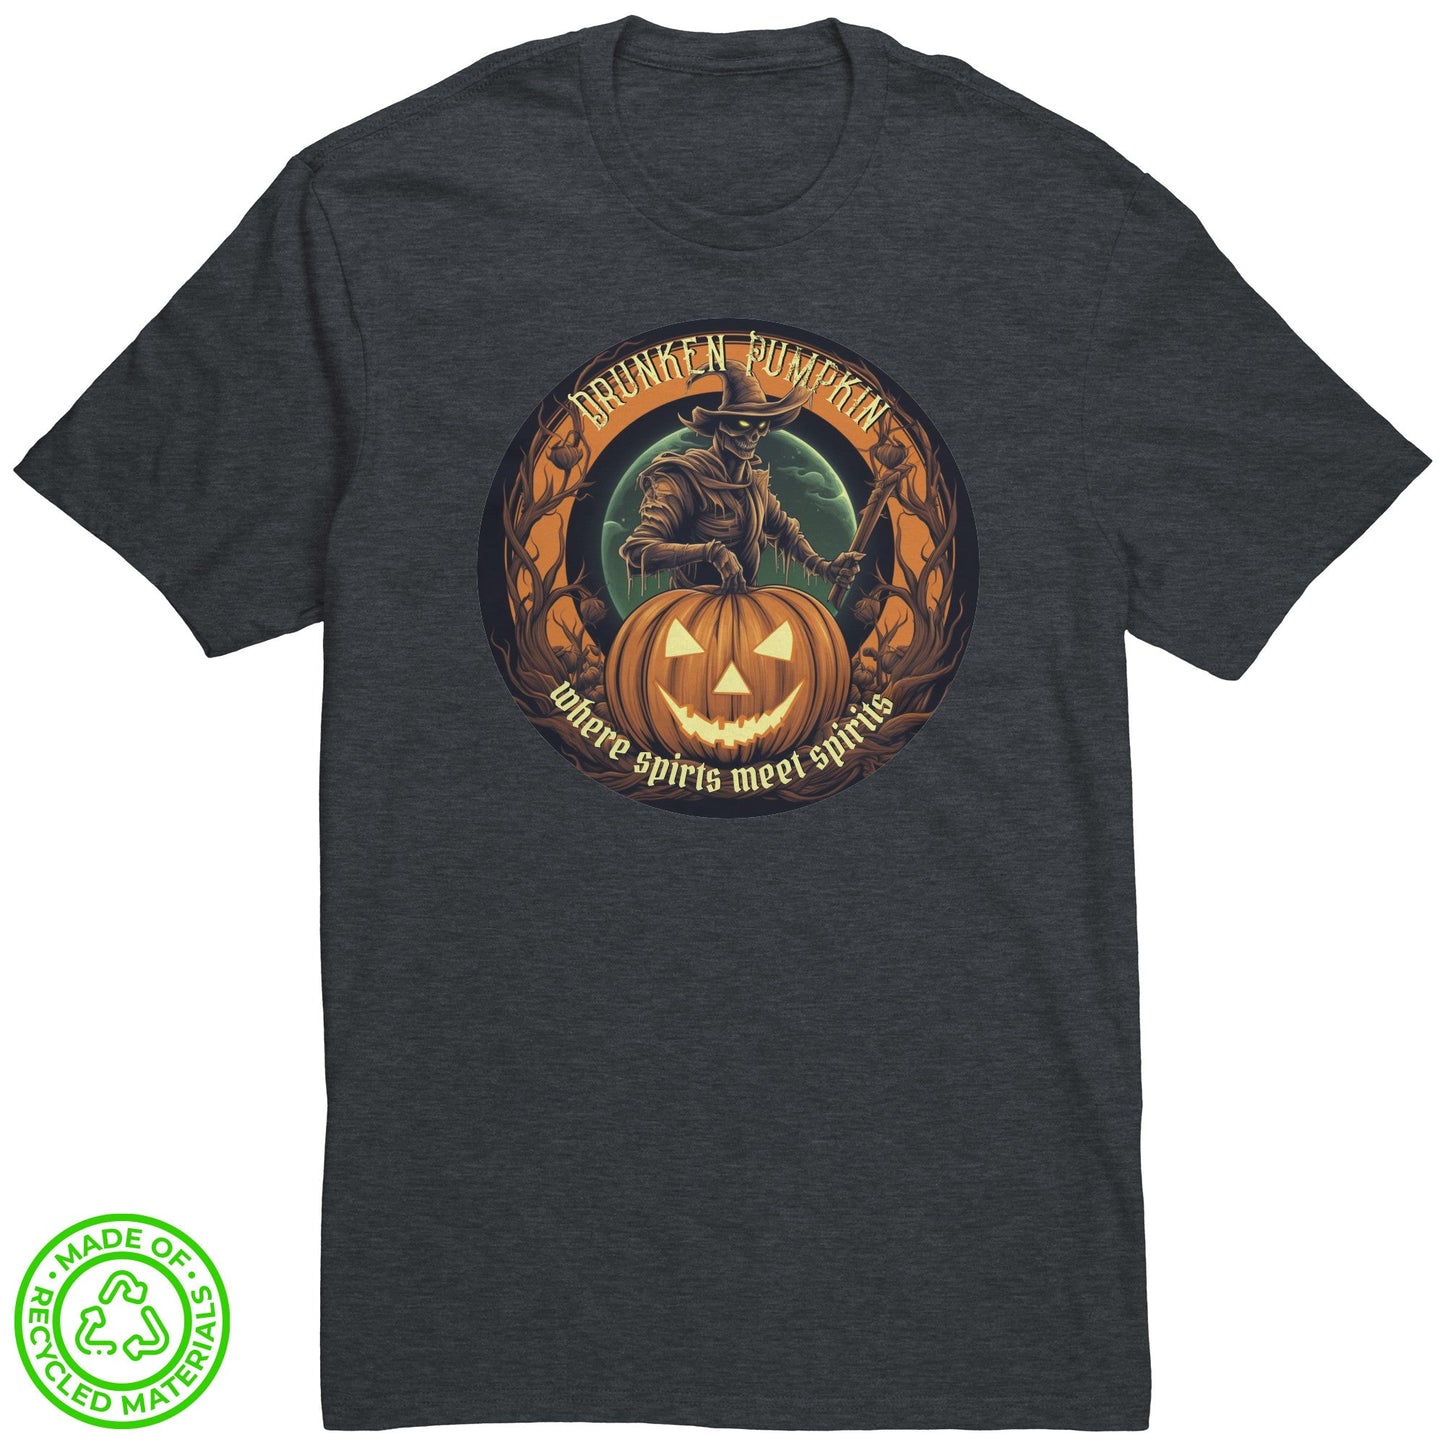 Drunken Pumpkin Tee Shirt Where Sprits Meet Spirits - Black Ship Grooming Co.